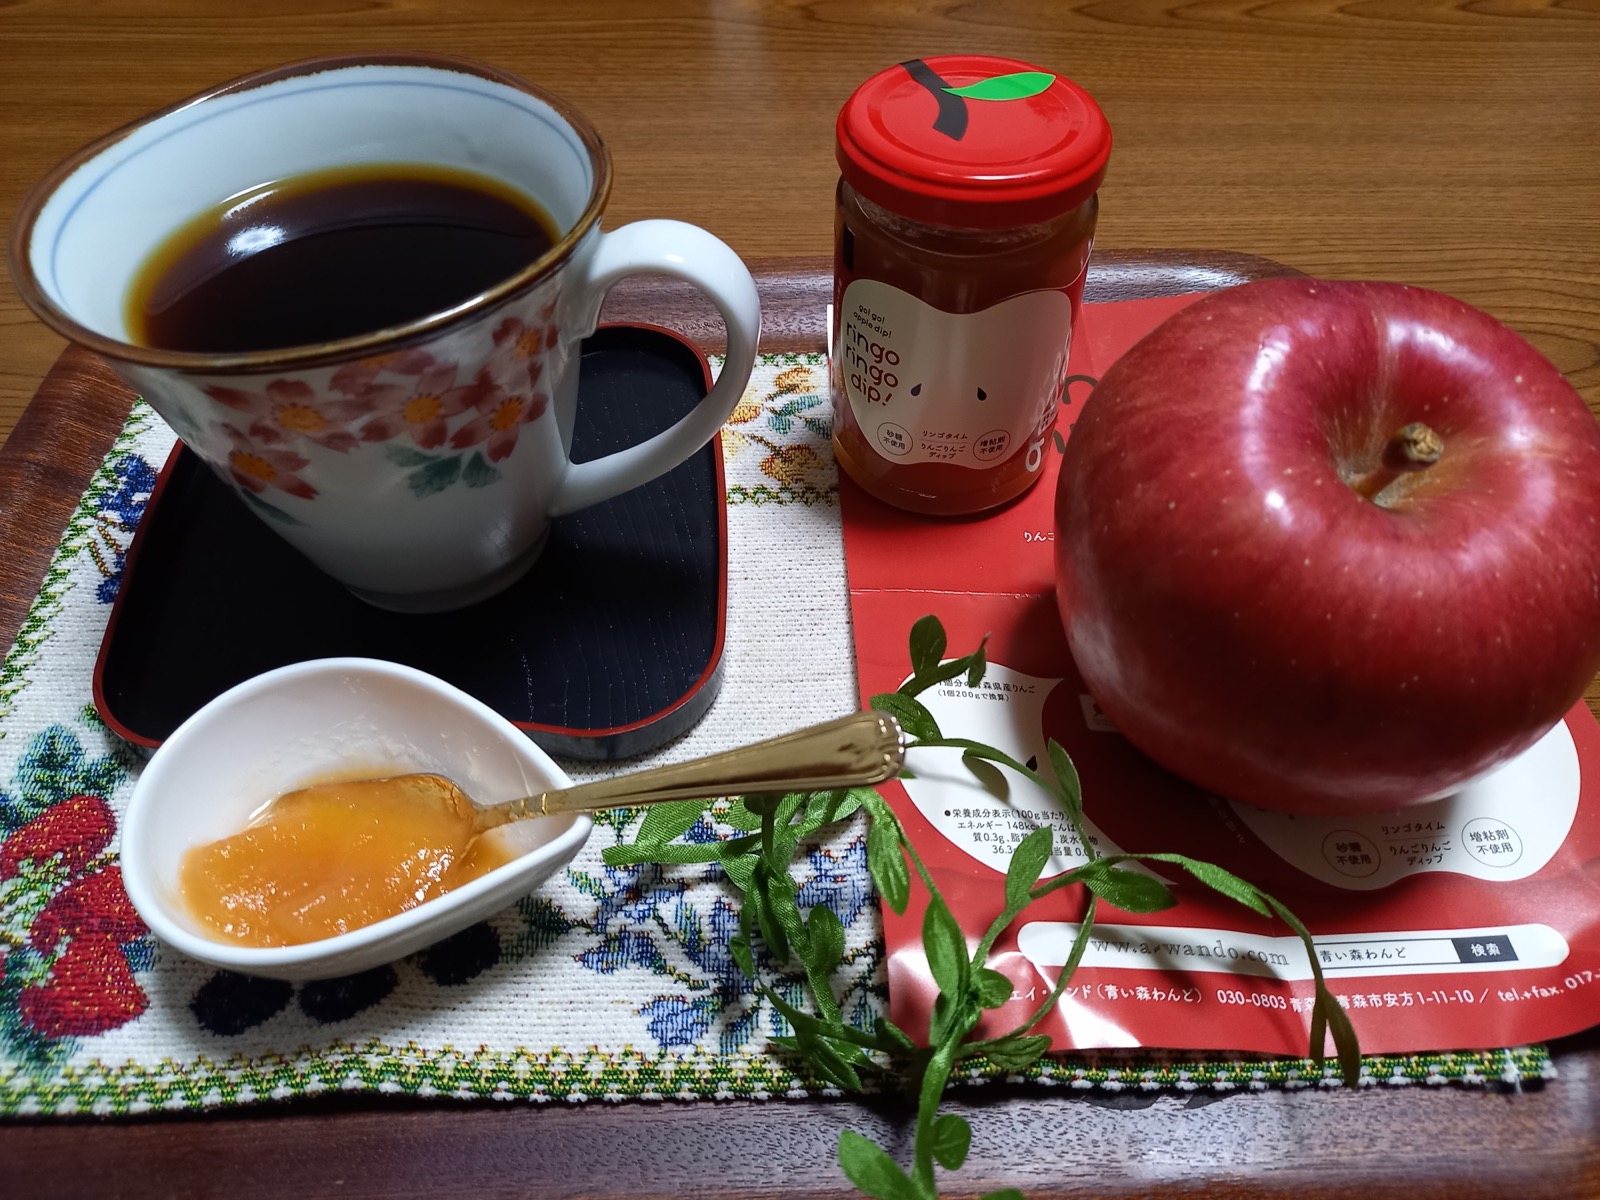 「りんごディップ」と「梅砂糖コーヒー」のお写真を頂きました♪